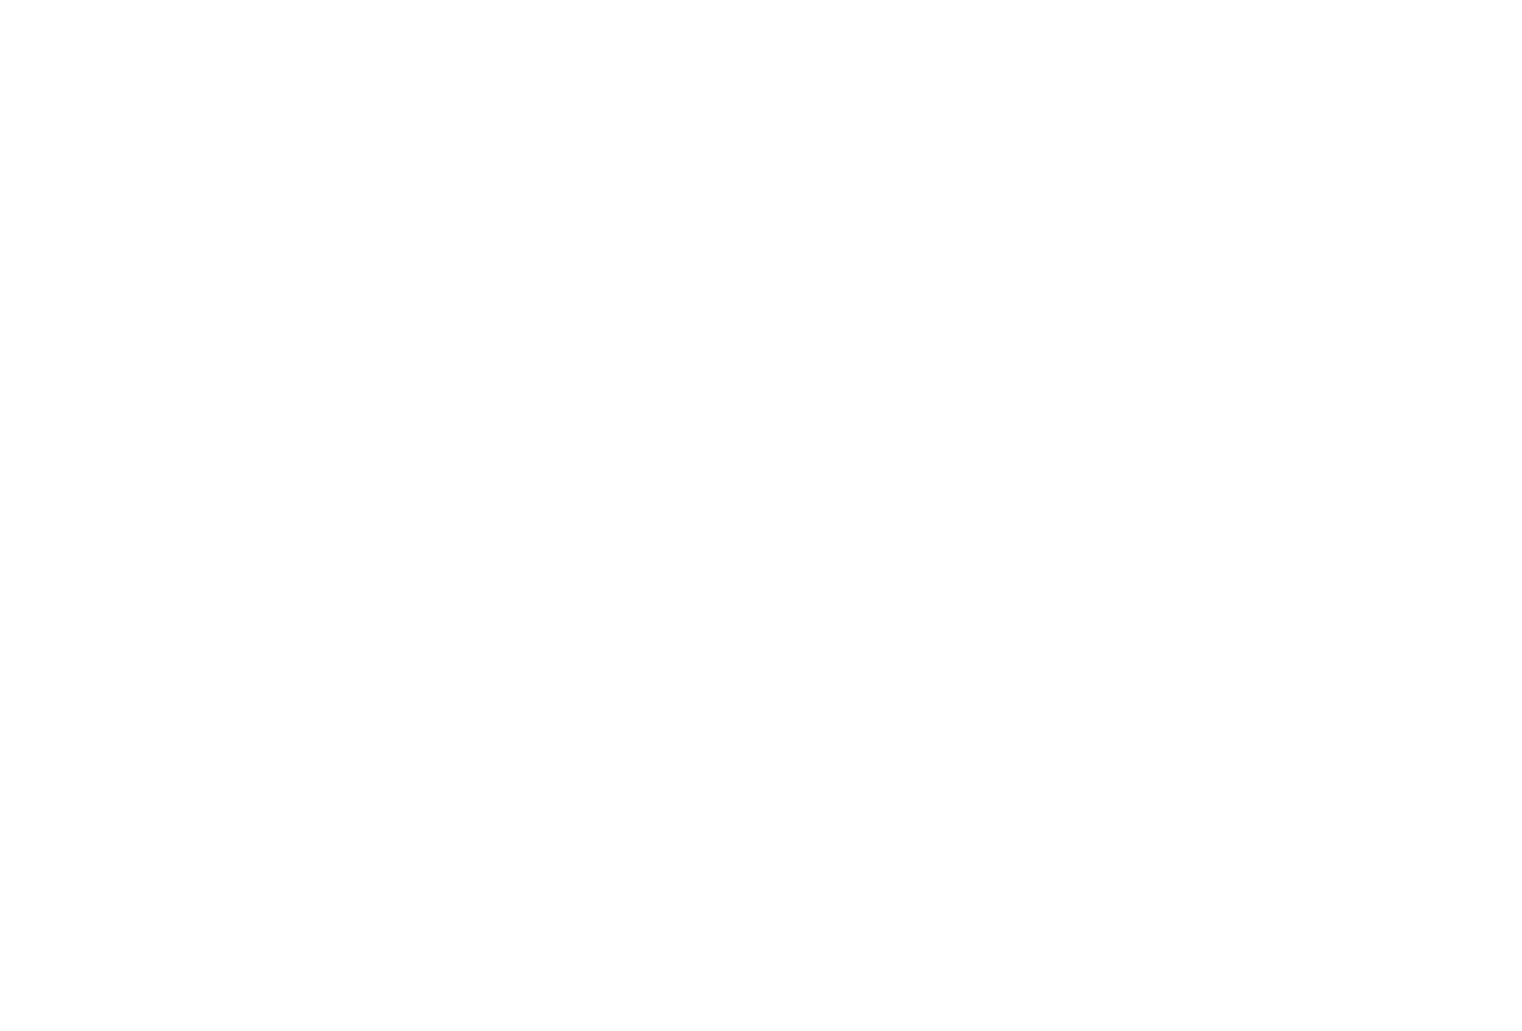 Vtech logo for dark backgrounds (transparent PNG)